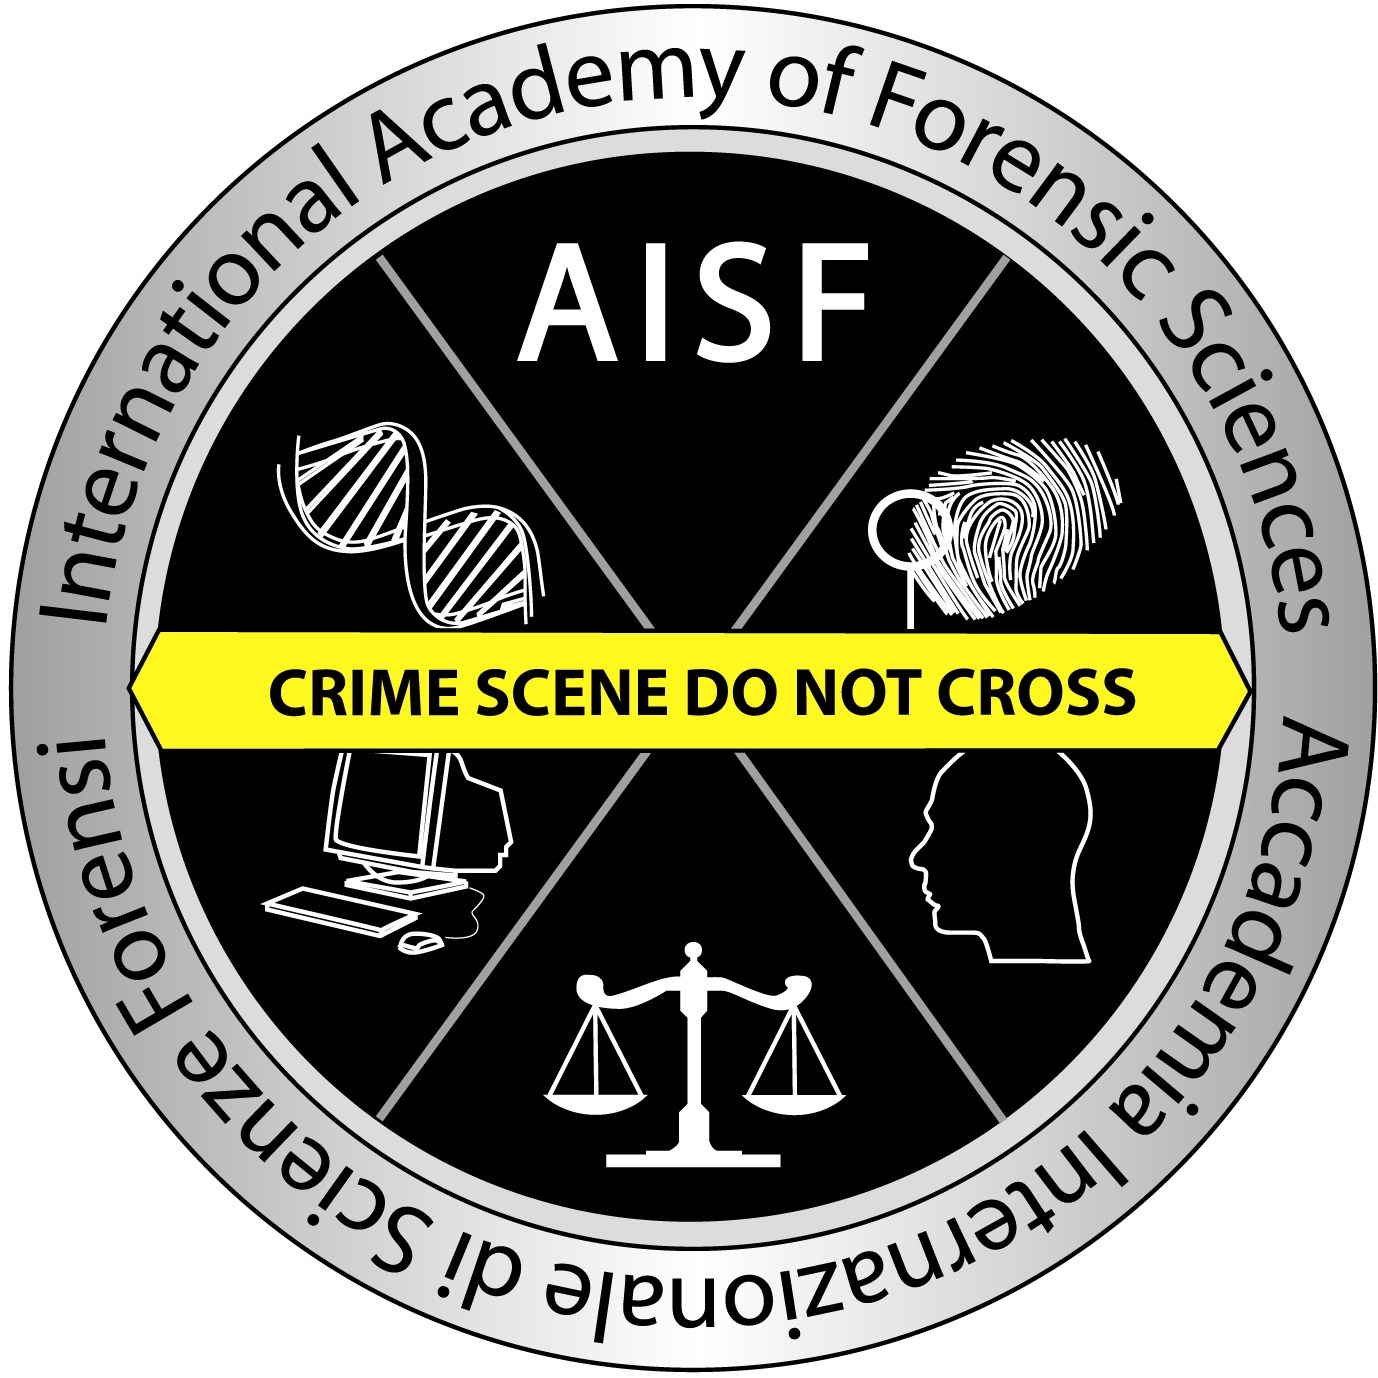 Aisf Logos